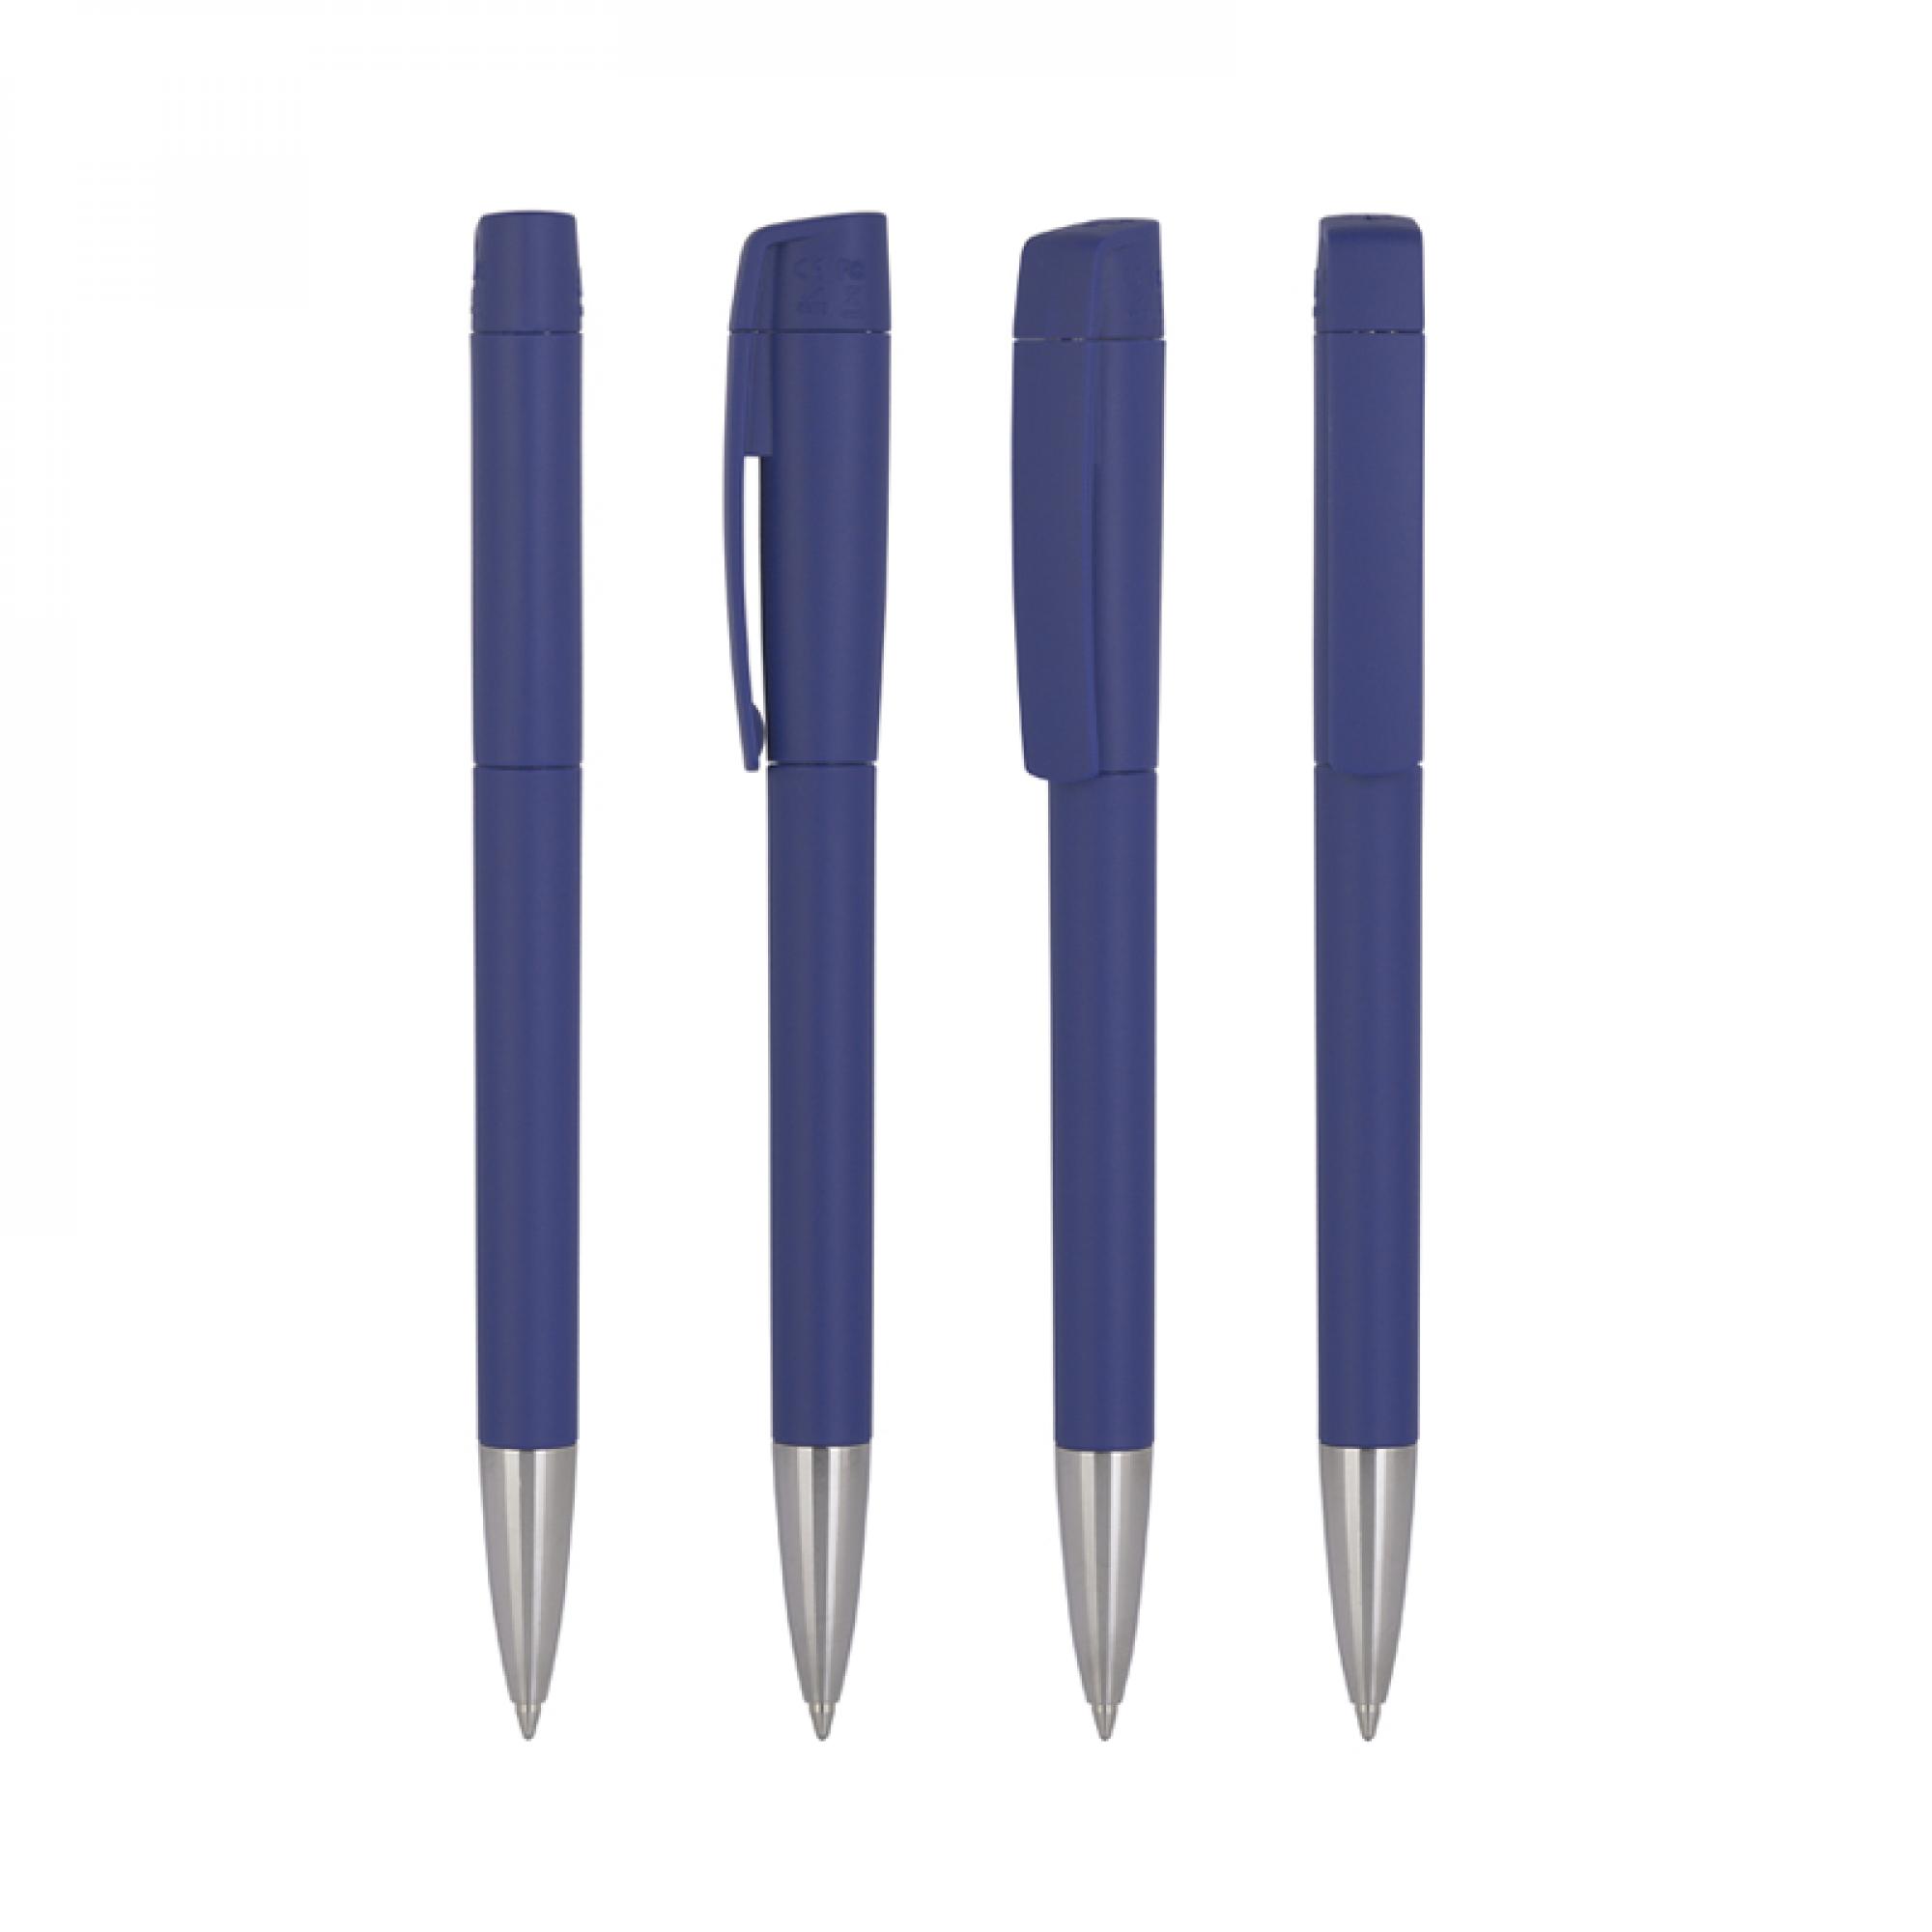 Ручка с флеш-картой USB 16GB «TURNUSsofttouch M», цвет темно-синий, фото 1